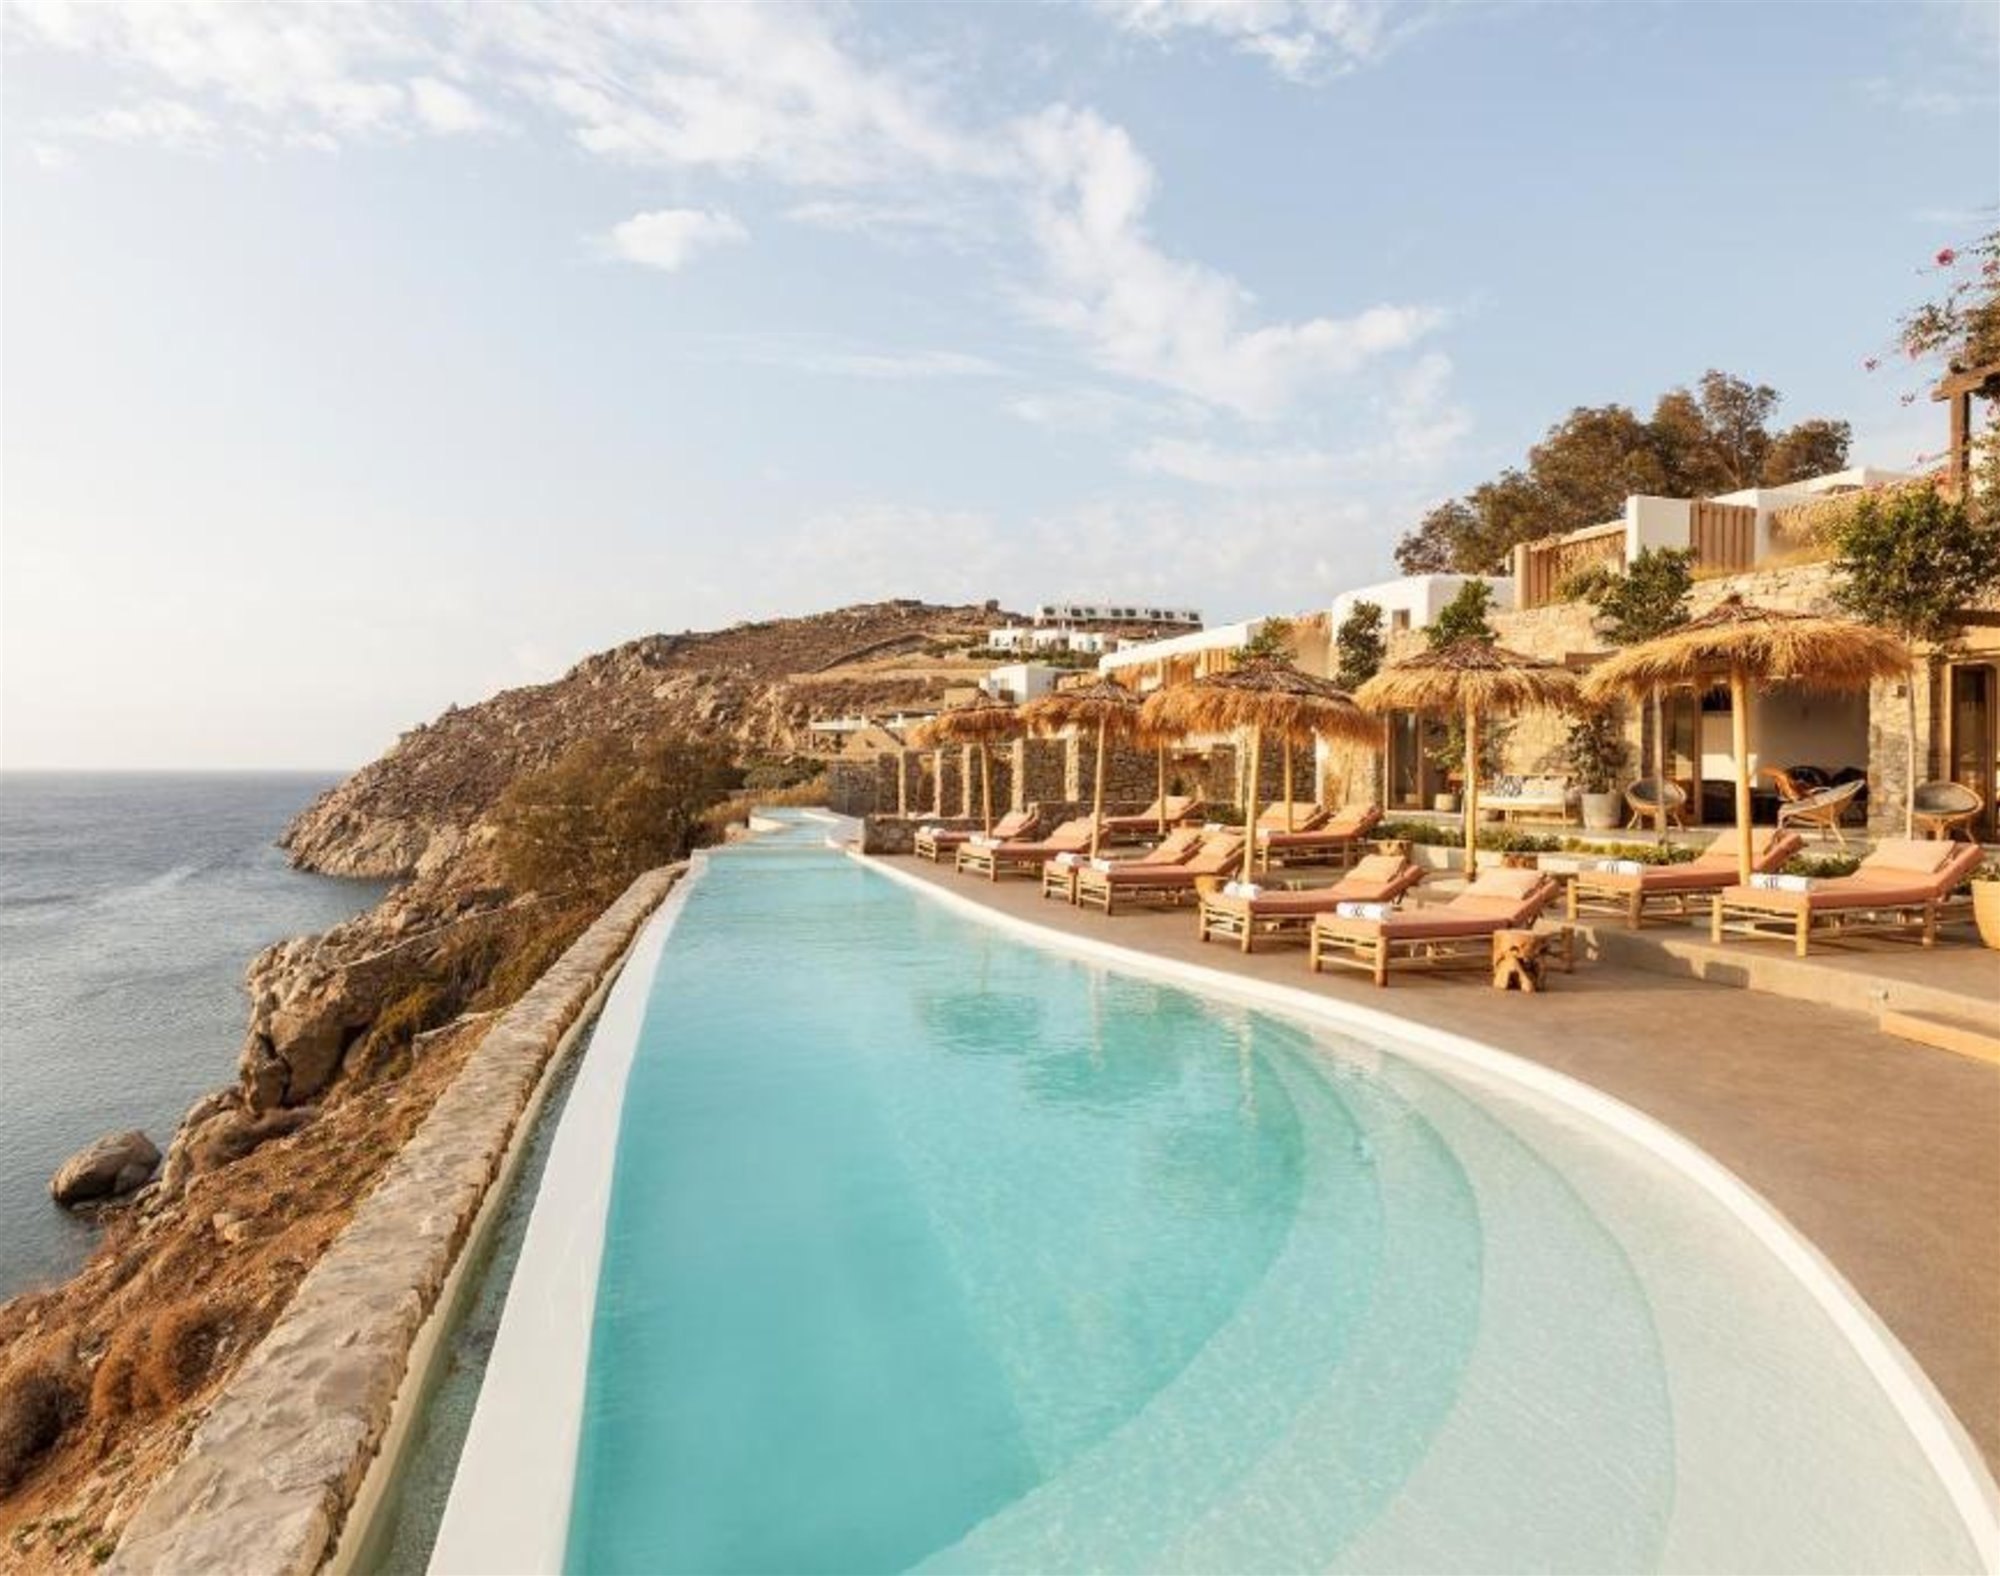 piscina del Wild hotel by interni en grecia